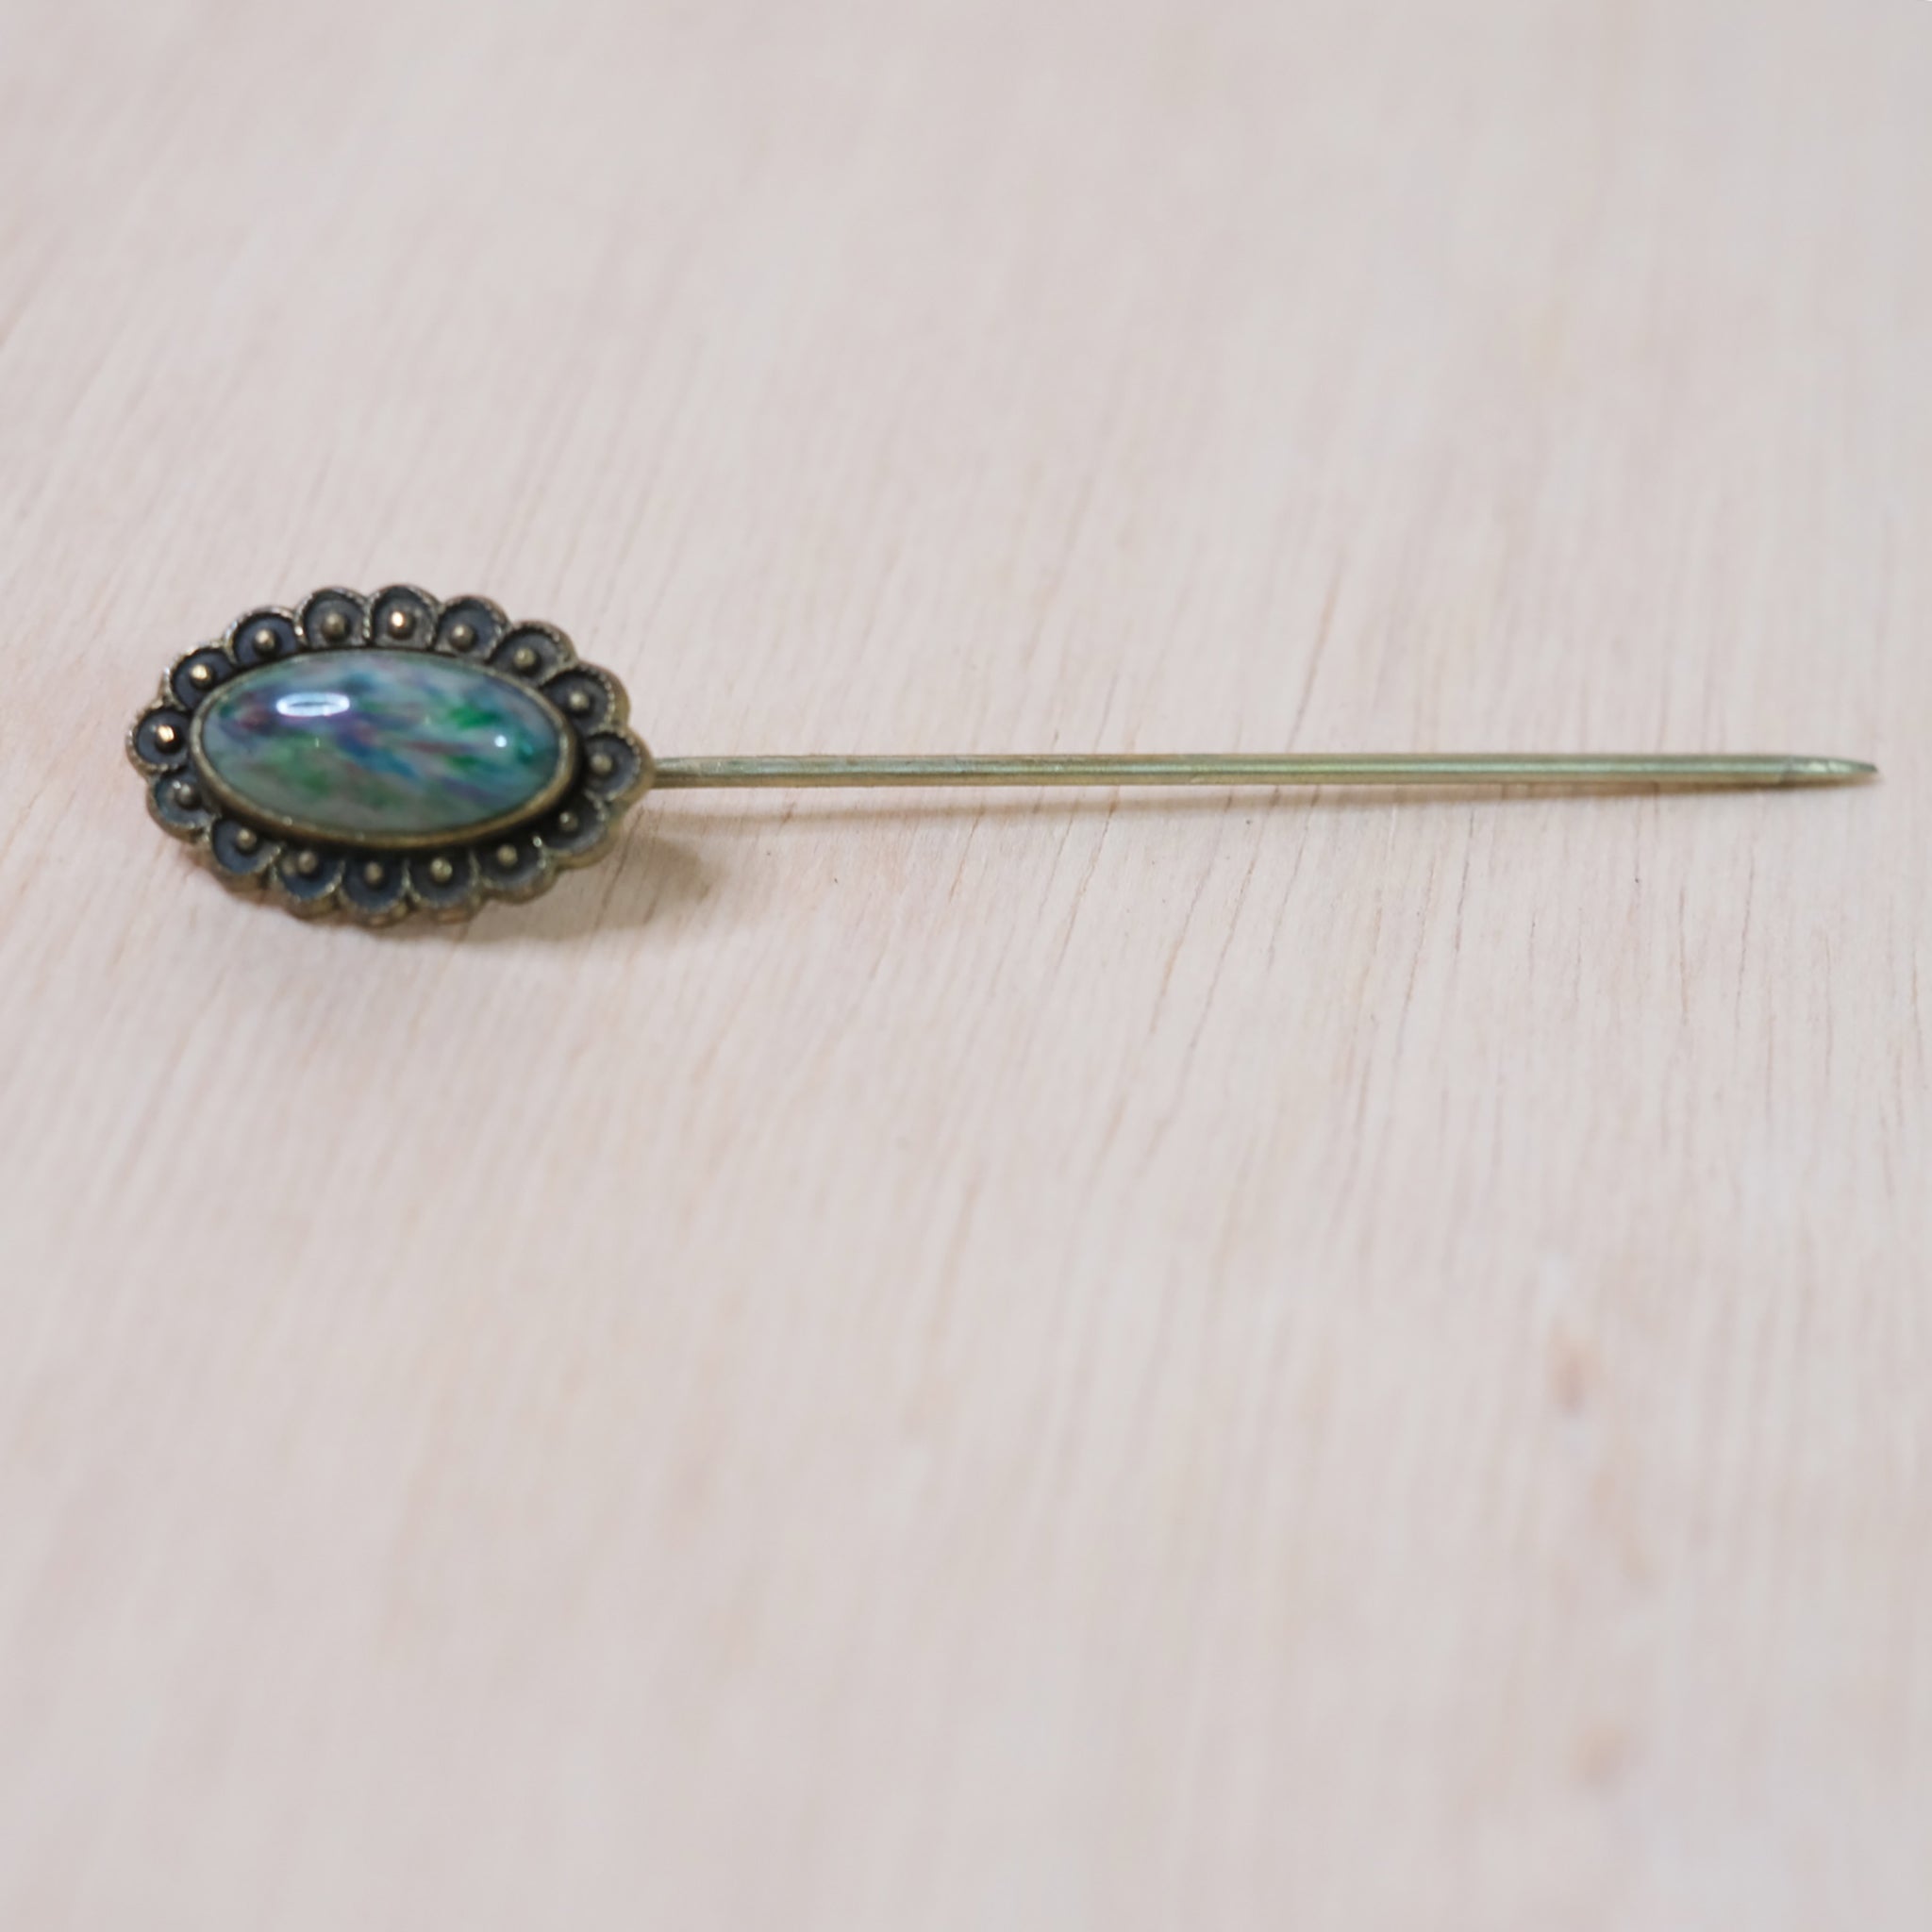 Vintage Pin